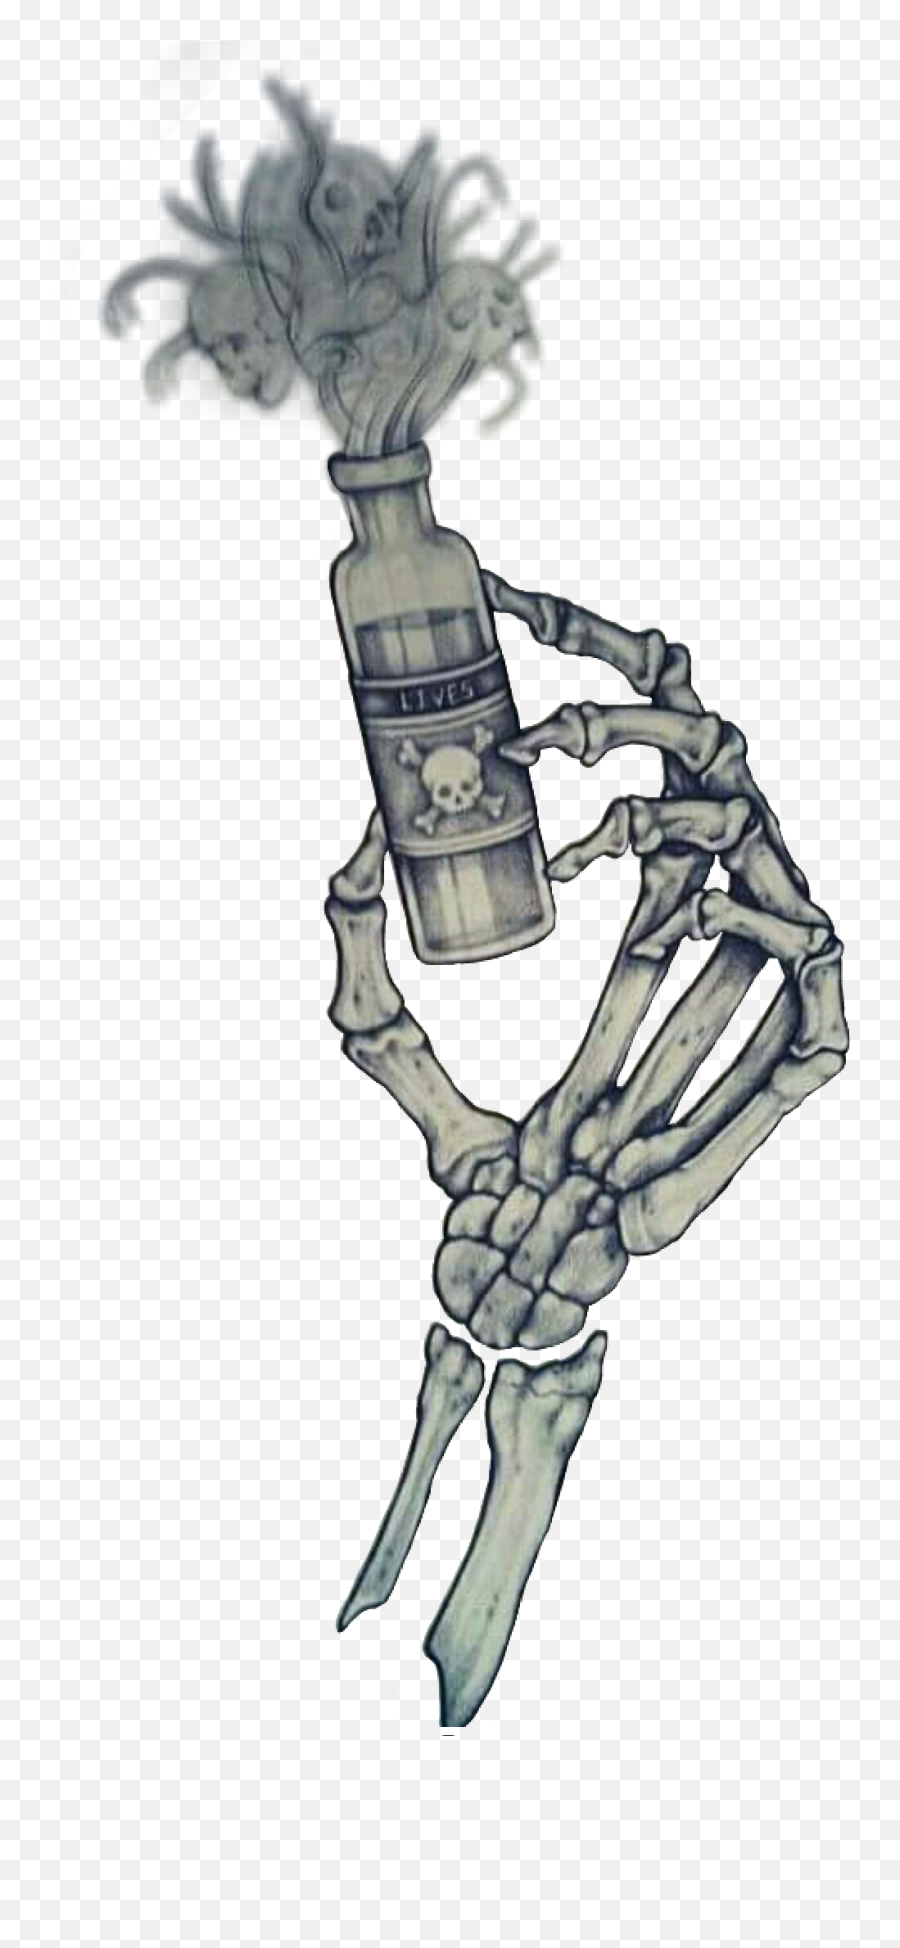 To Drink Or Not To Drink Bottle Potion Lives Skull Cros - Illustration Emoji,Skull Crossbones Emoji